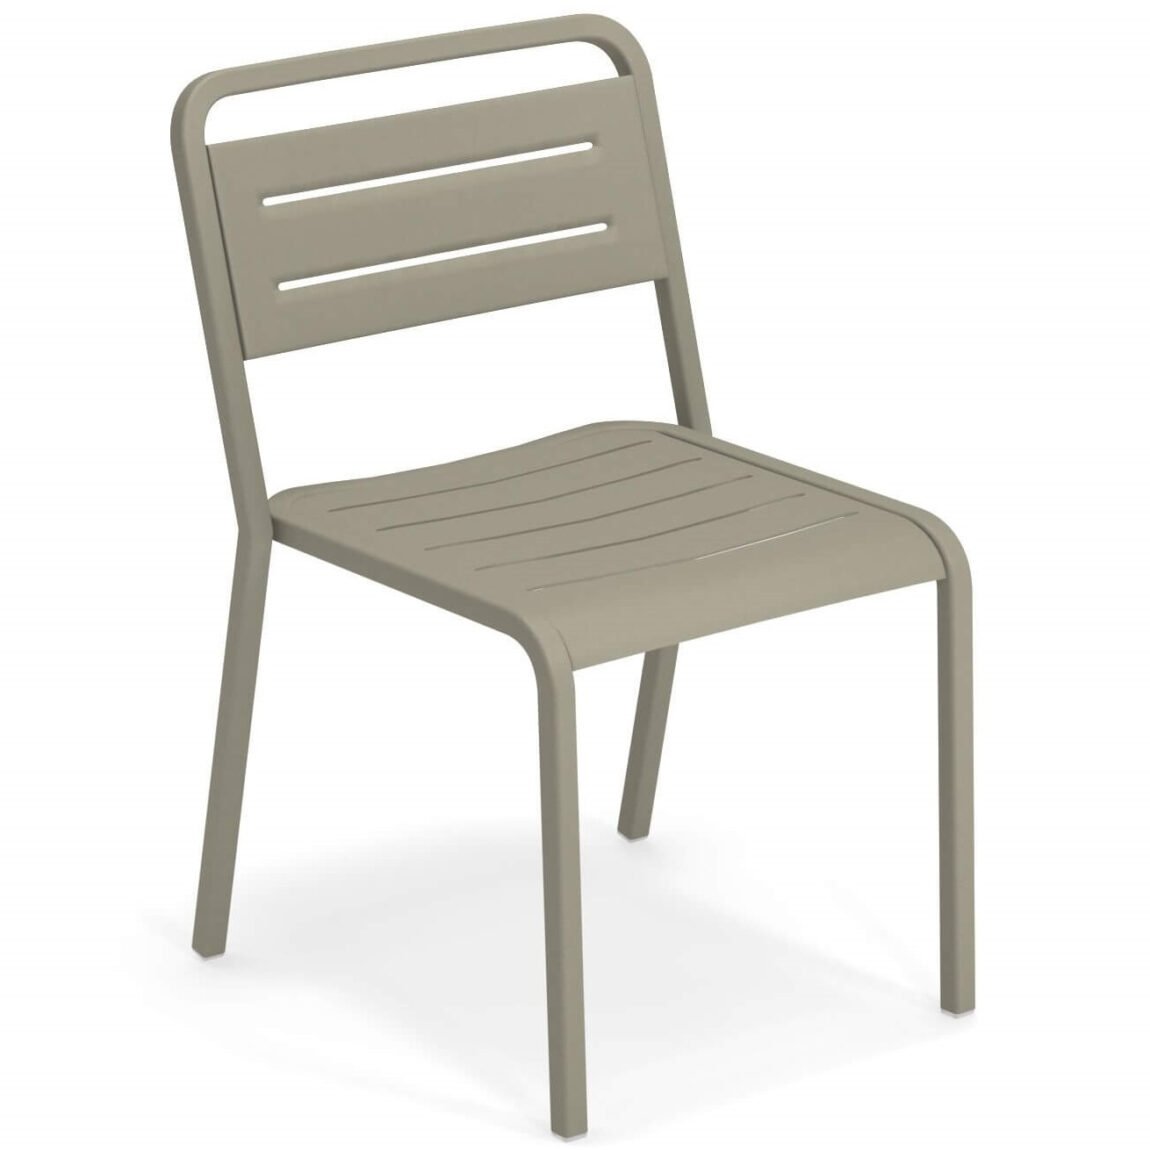 Výprodej Emu designové zahradní židle